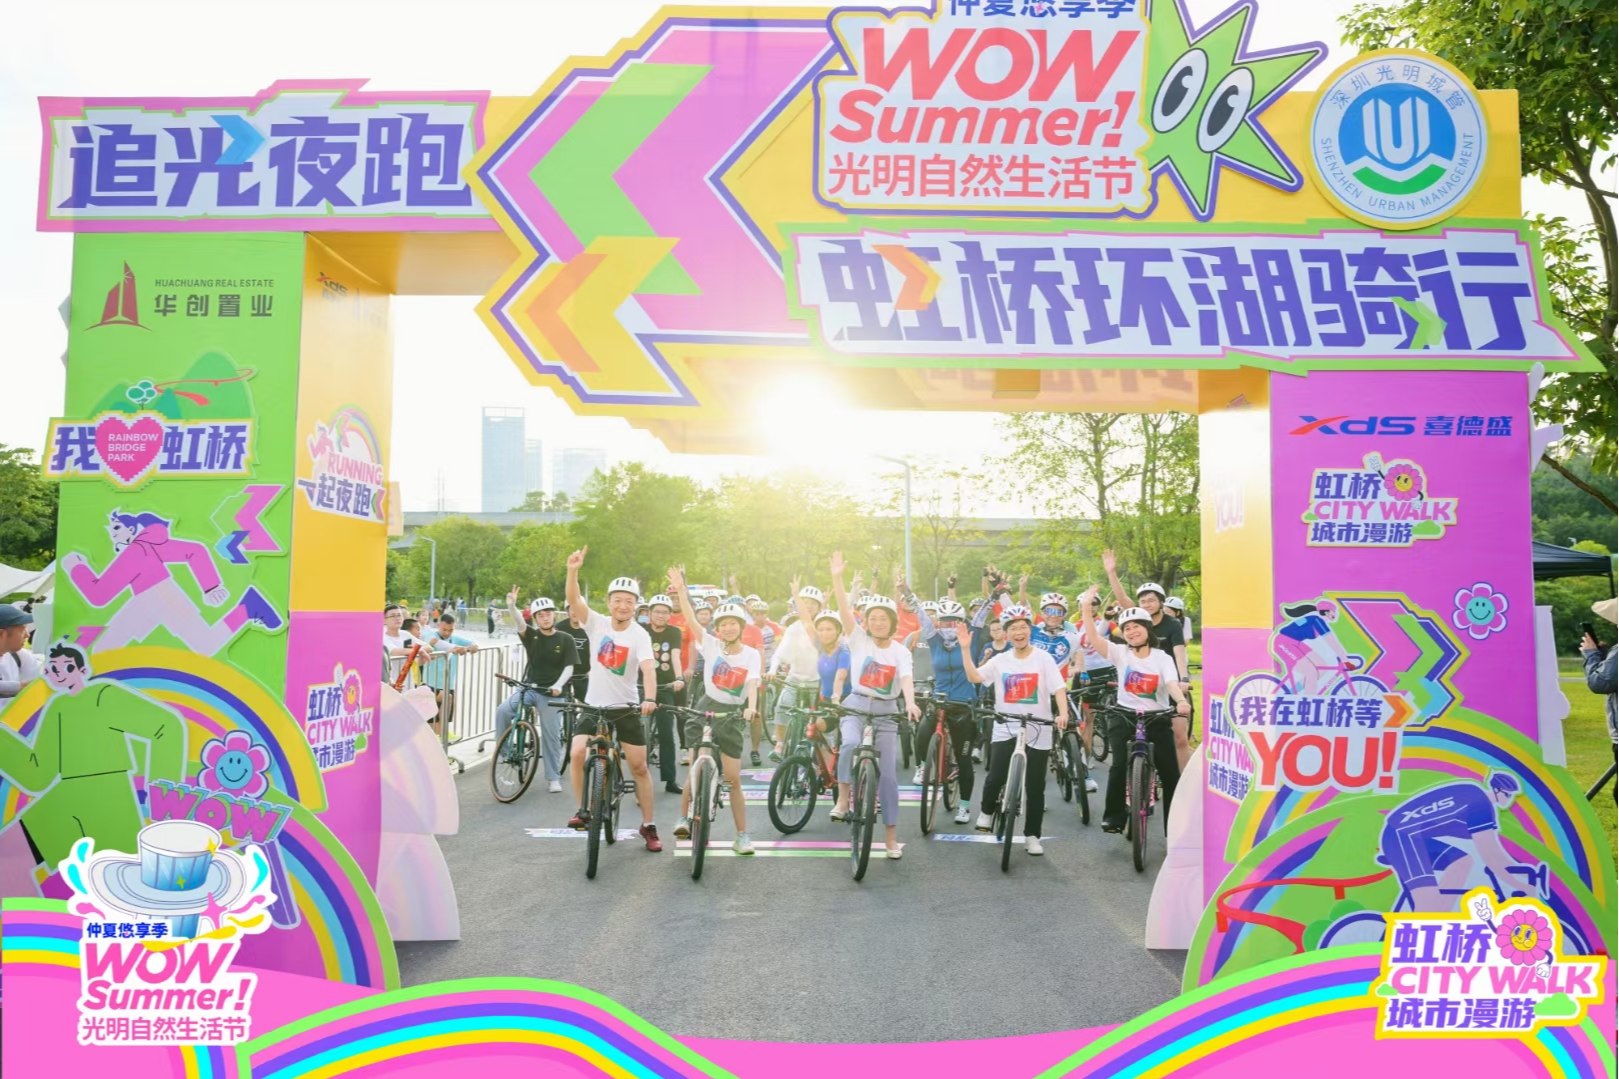 虹桥公园南广场正式开放，“WOW Summer！光明自然生活节”启幕